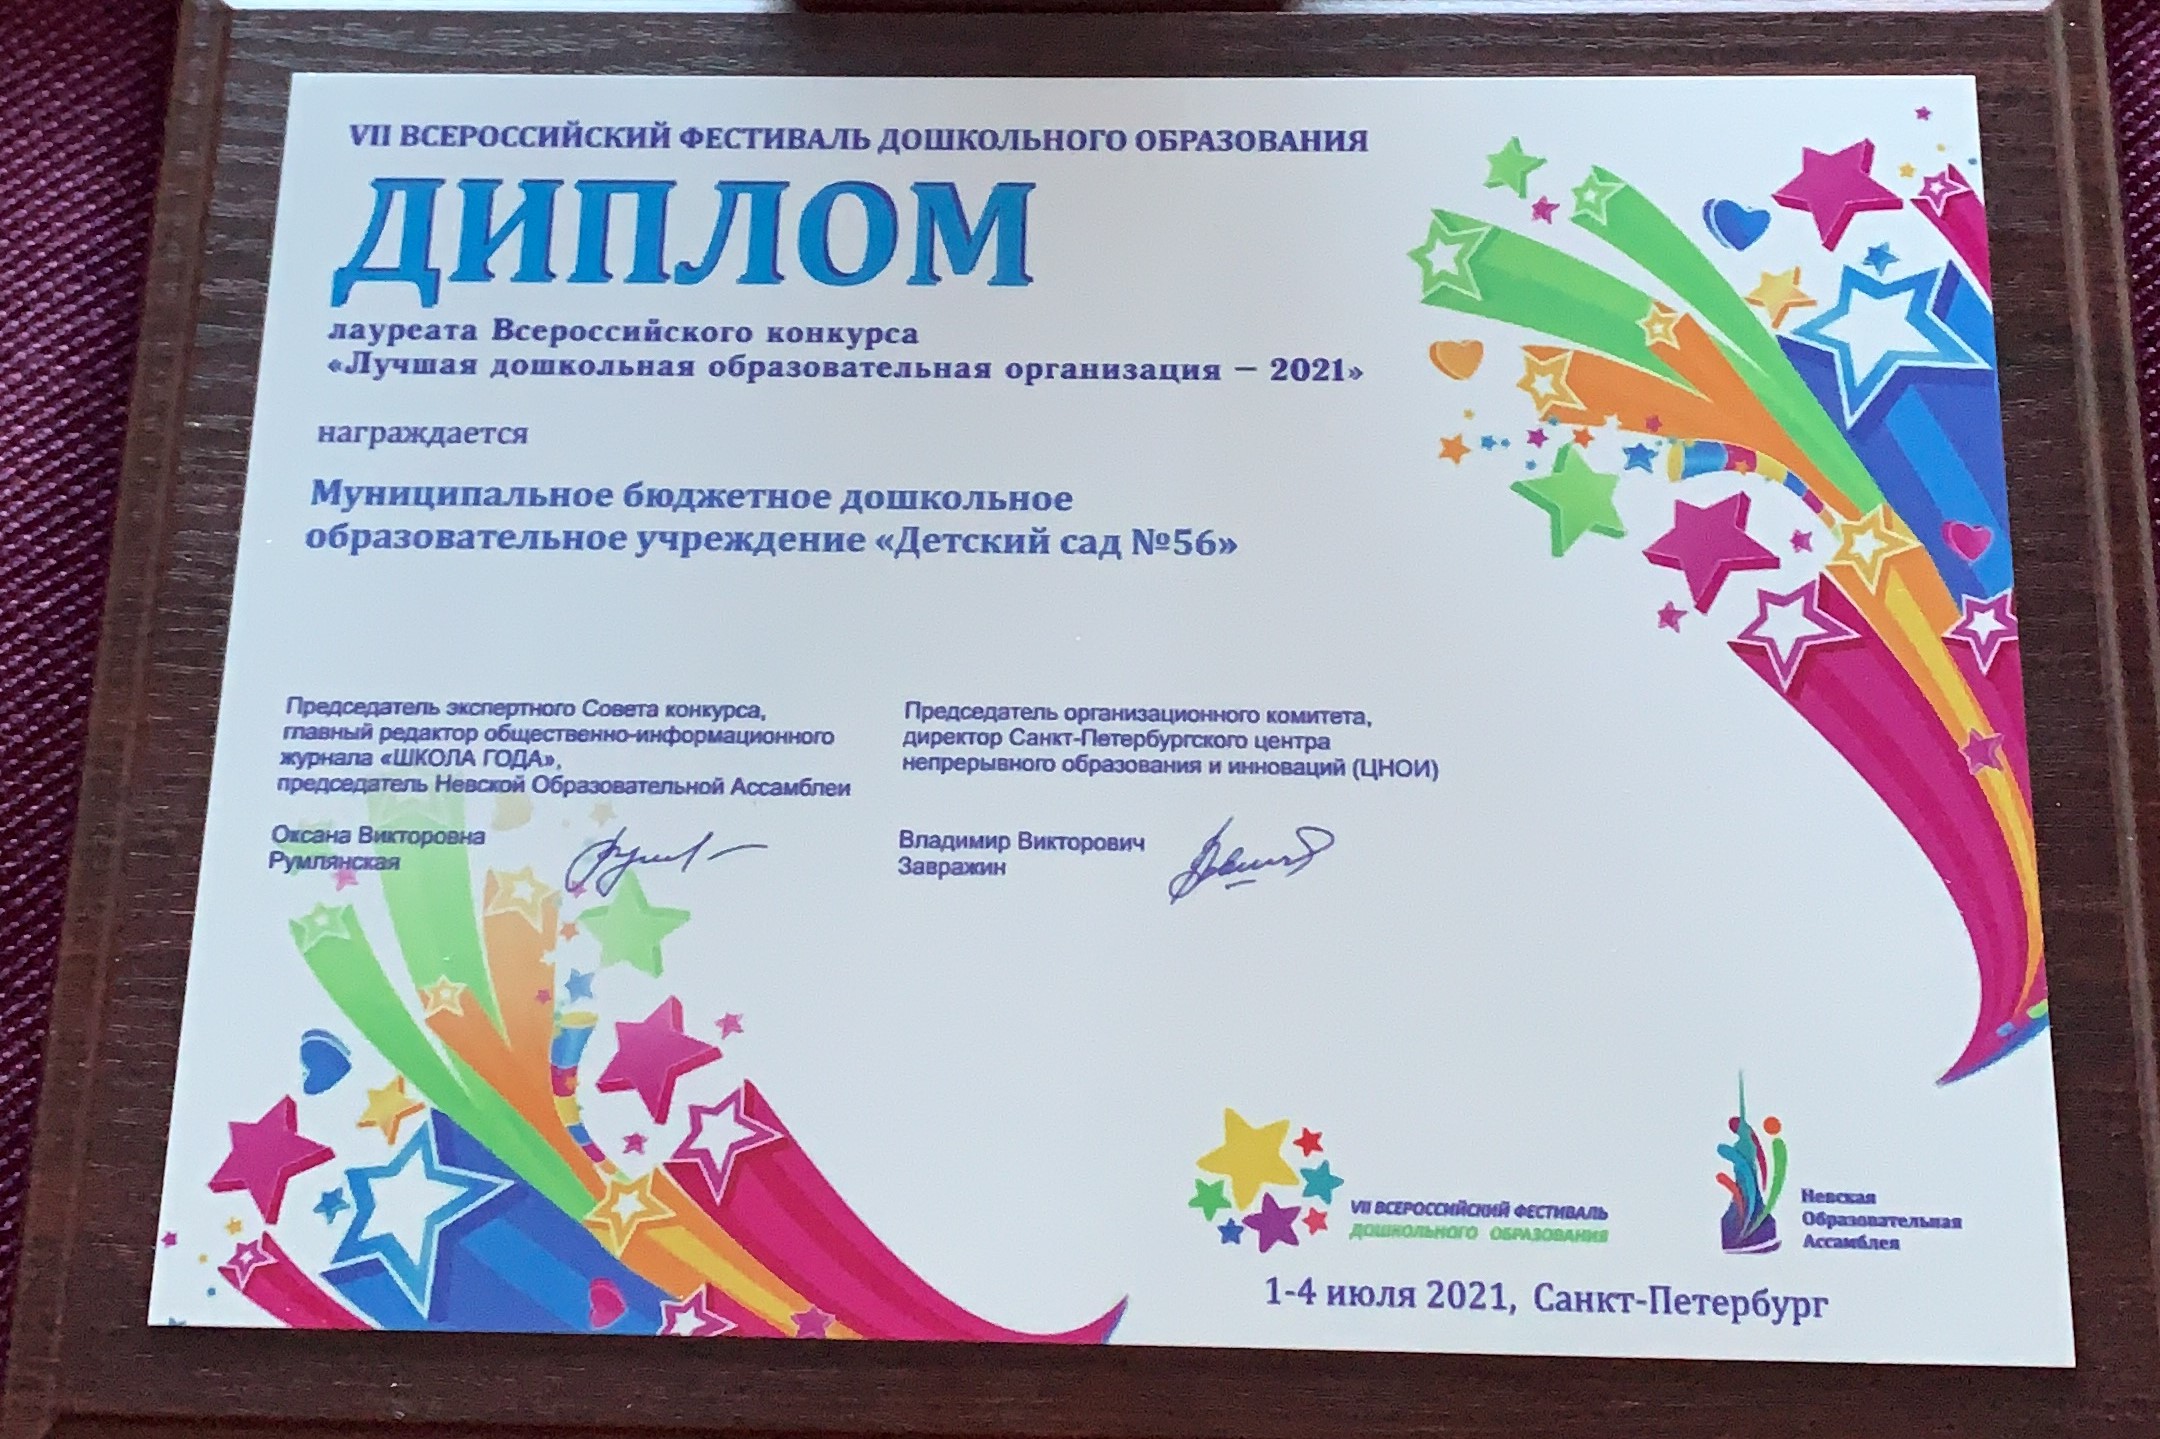 Барнаульский детский сад №56 стал лауреатом Всероссийского конкурса  «Лучшая дошкольная образовательная организация – 2021»